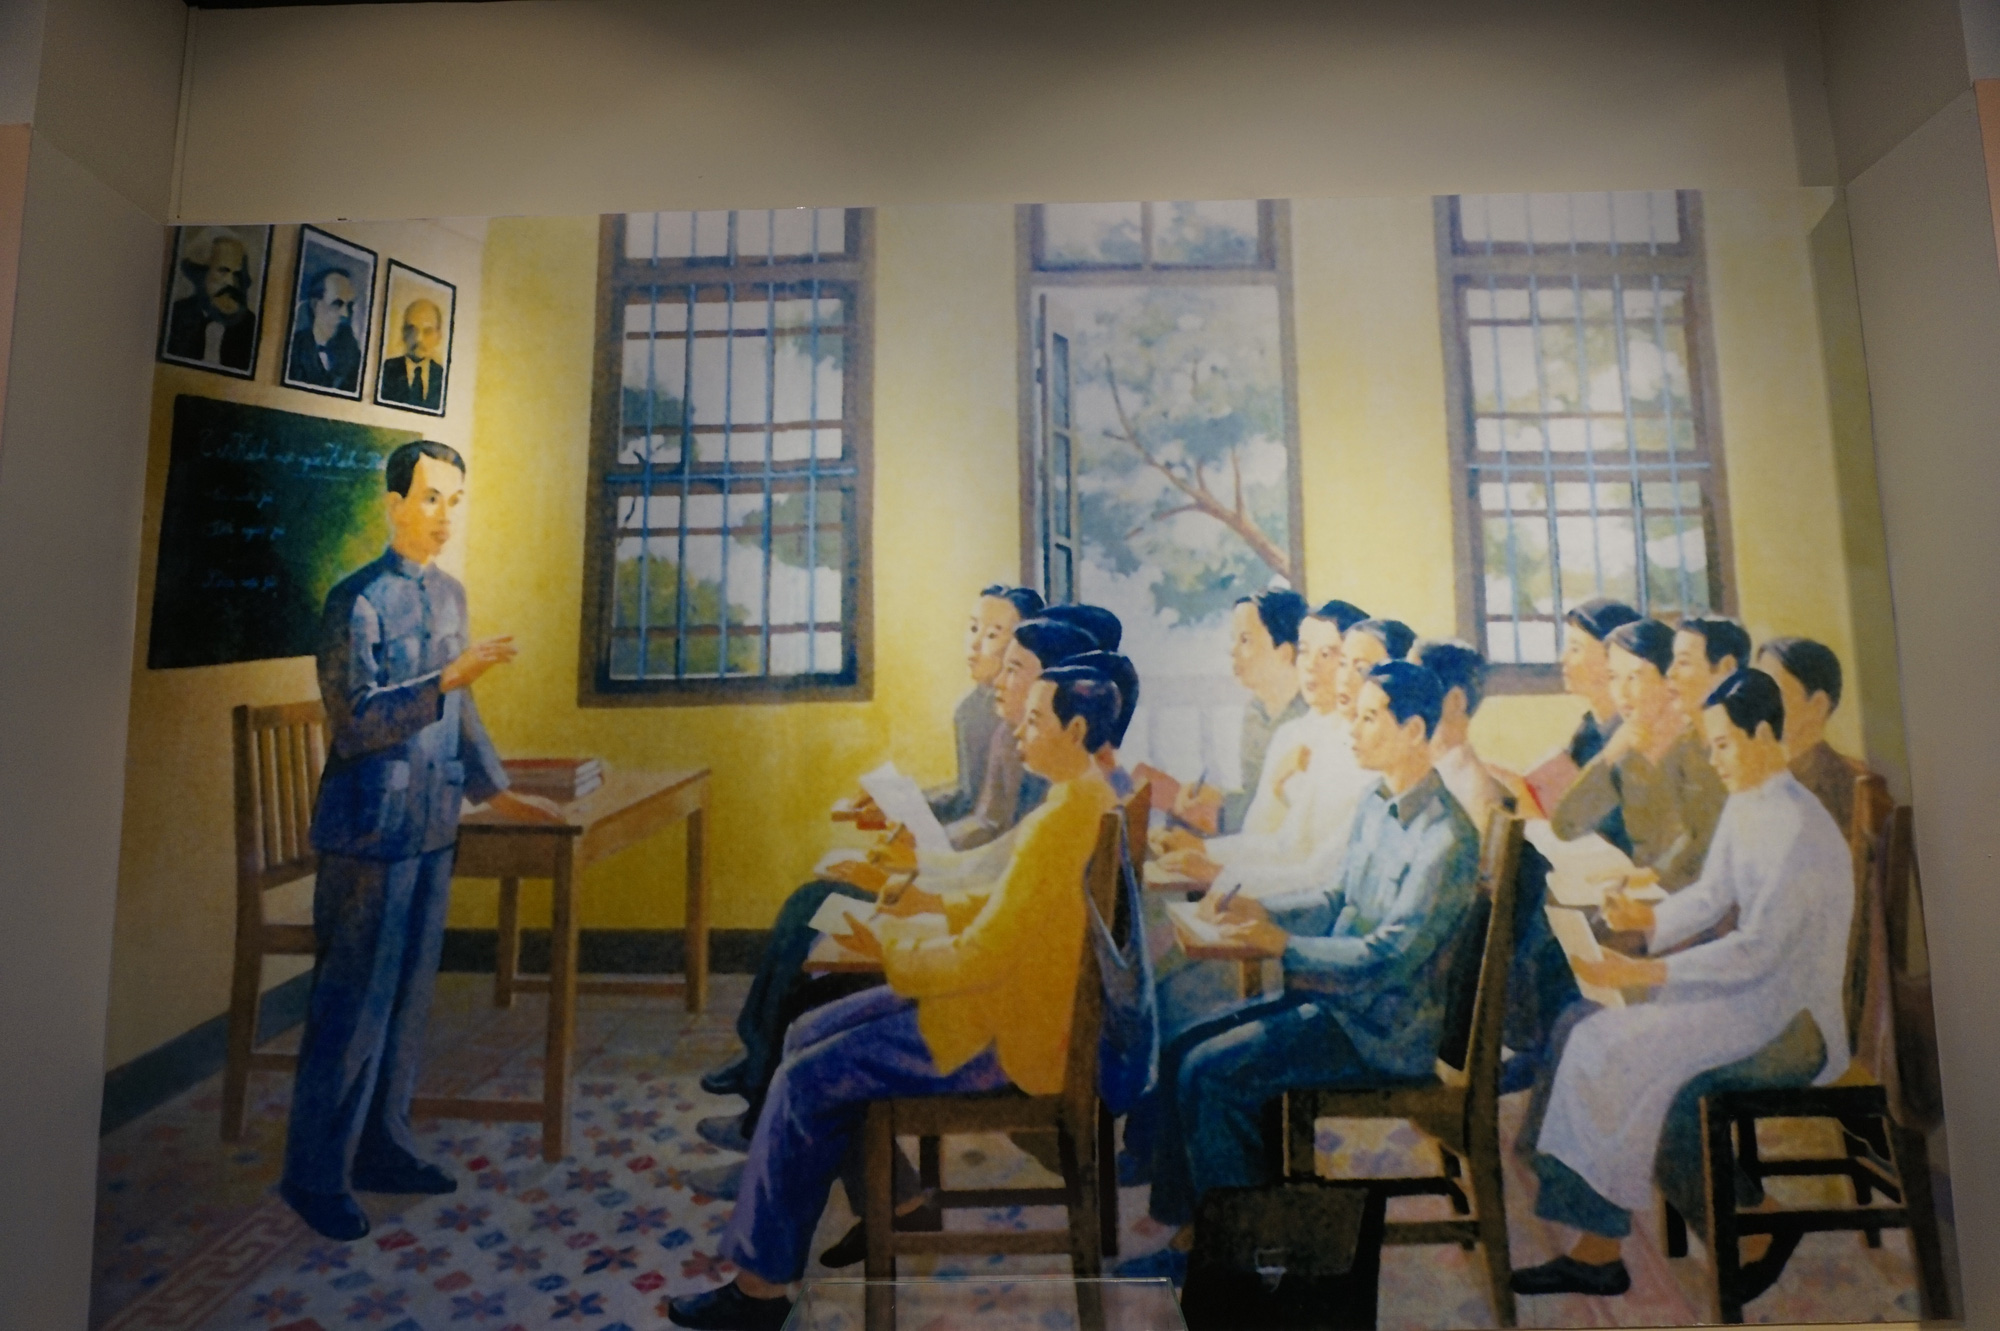 Tranh vẽ mô tả  lớp huấn luyện chính trị cho những “hạt giống đỏ” ở Quảng Châu, Trung Quốc do lãnh tụ Nguyễn Ái Quốc giảng dạy được trưng bày